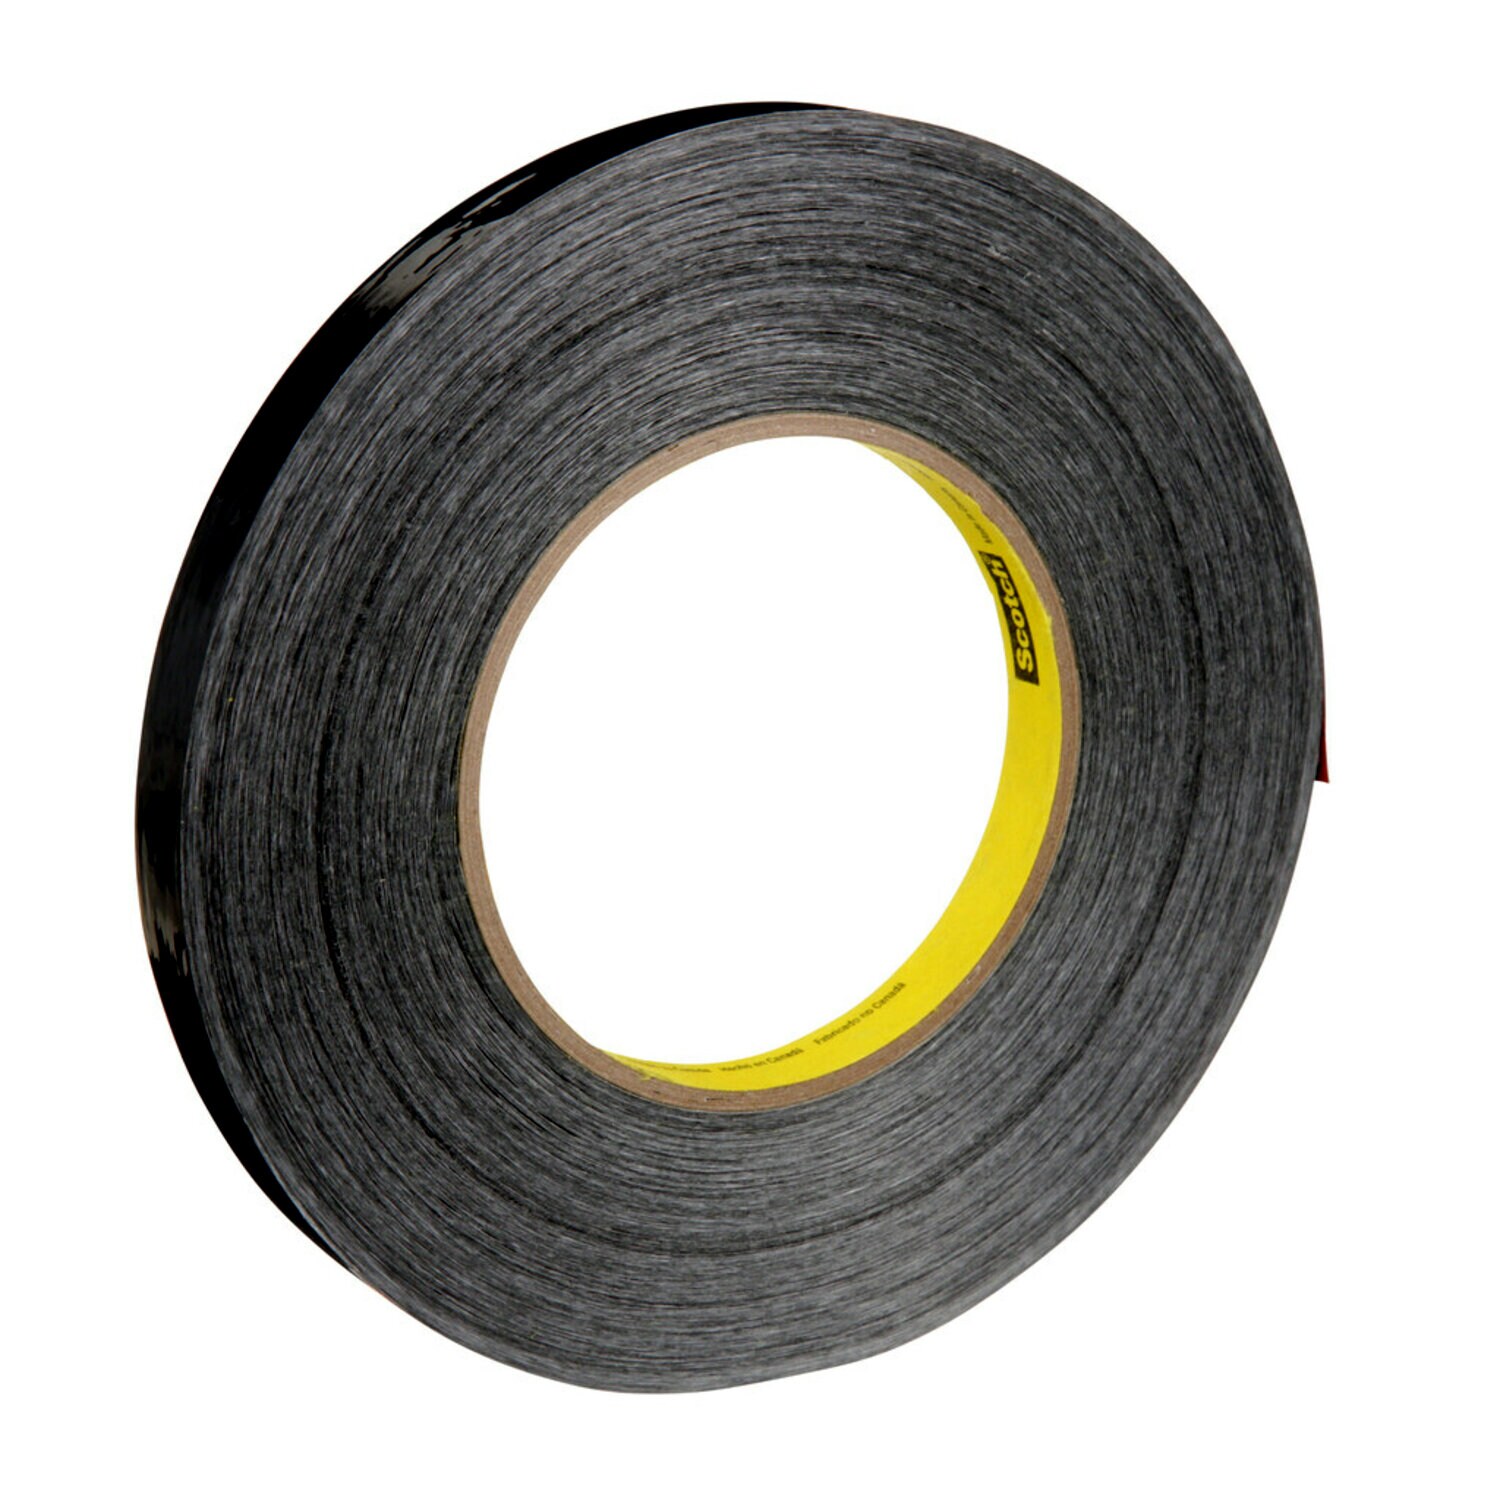 7000124630 - Scotch Filament Tape 890MSR, Black, 12 mm x 55 m, 8 mil, 72 rolls per
case